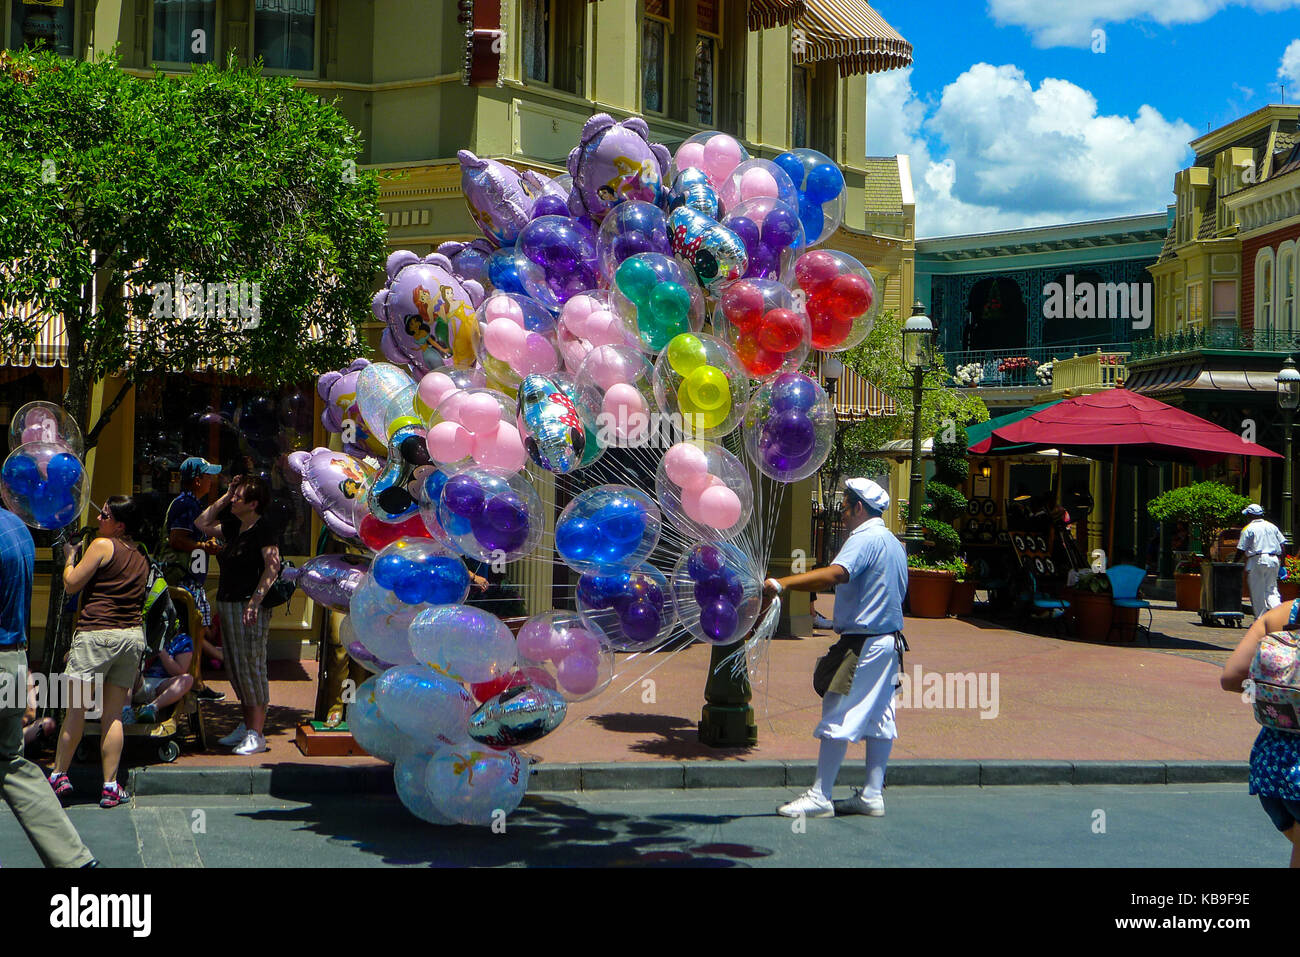 Mann, der einen großen Haufen Ballons in Disney World Theme Park in Orlando, Florida, USA, Freude Konzept, Best Life Konzept, Bündel Luftballons Stockfoto